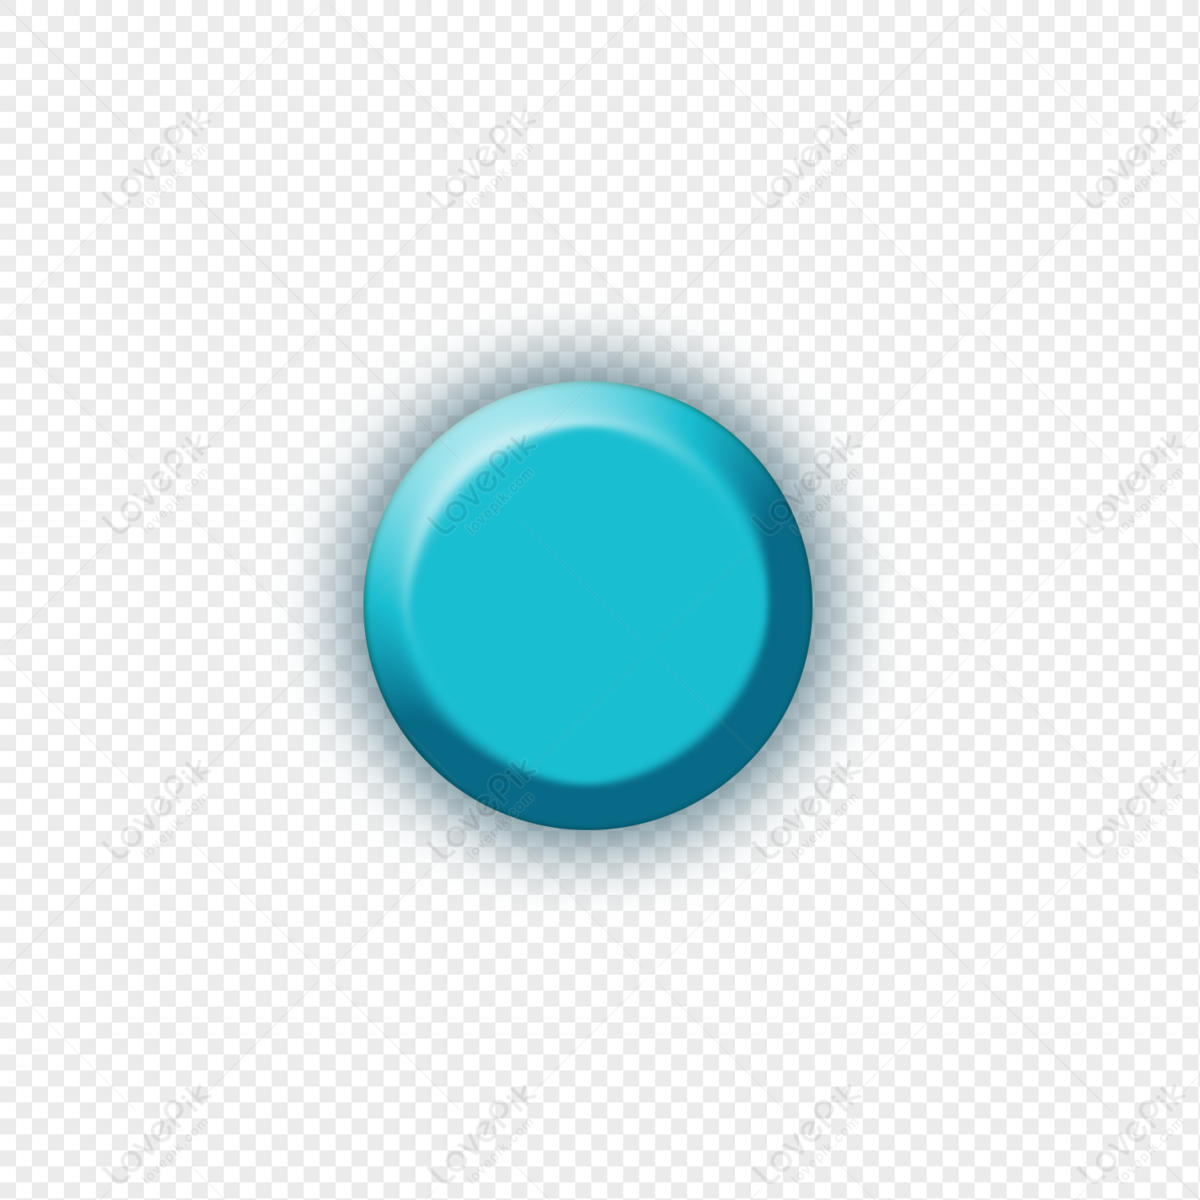 Игра синия кнопка. Синяя кнопка. Синяя круглая кнопка для фотошопа. Одни синие кнопки. Кнопка синяя с плавными концами.